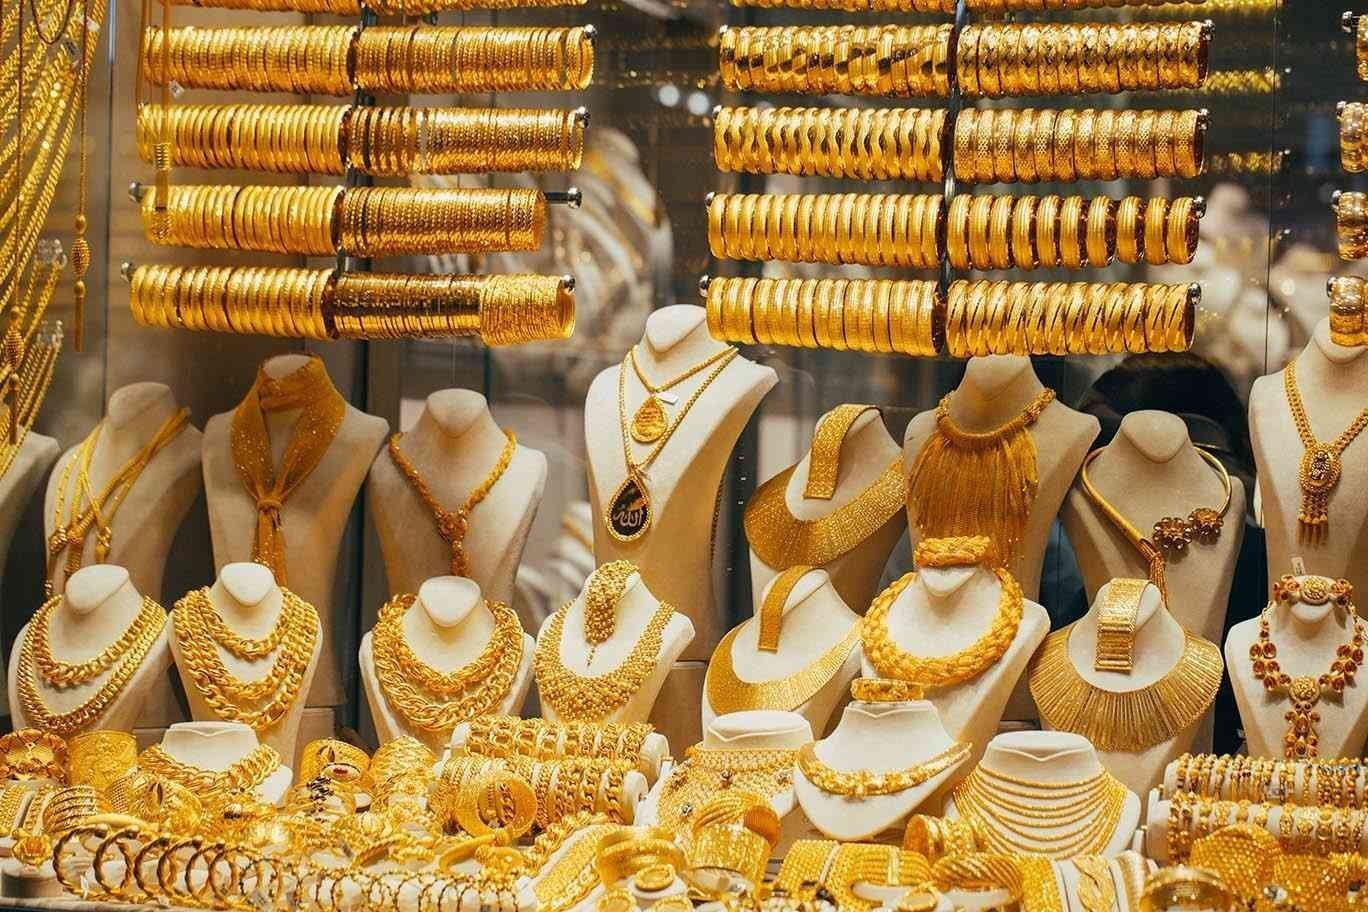  سعر الذهب اليوم في الأسواق المصرية